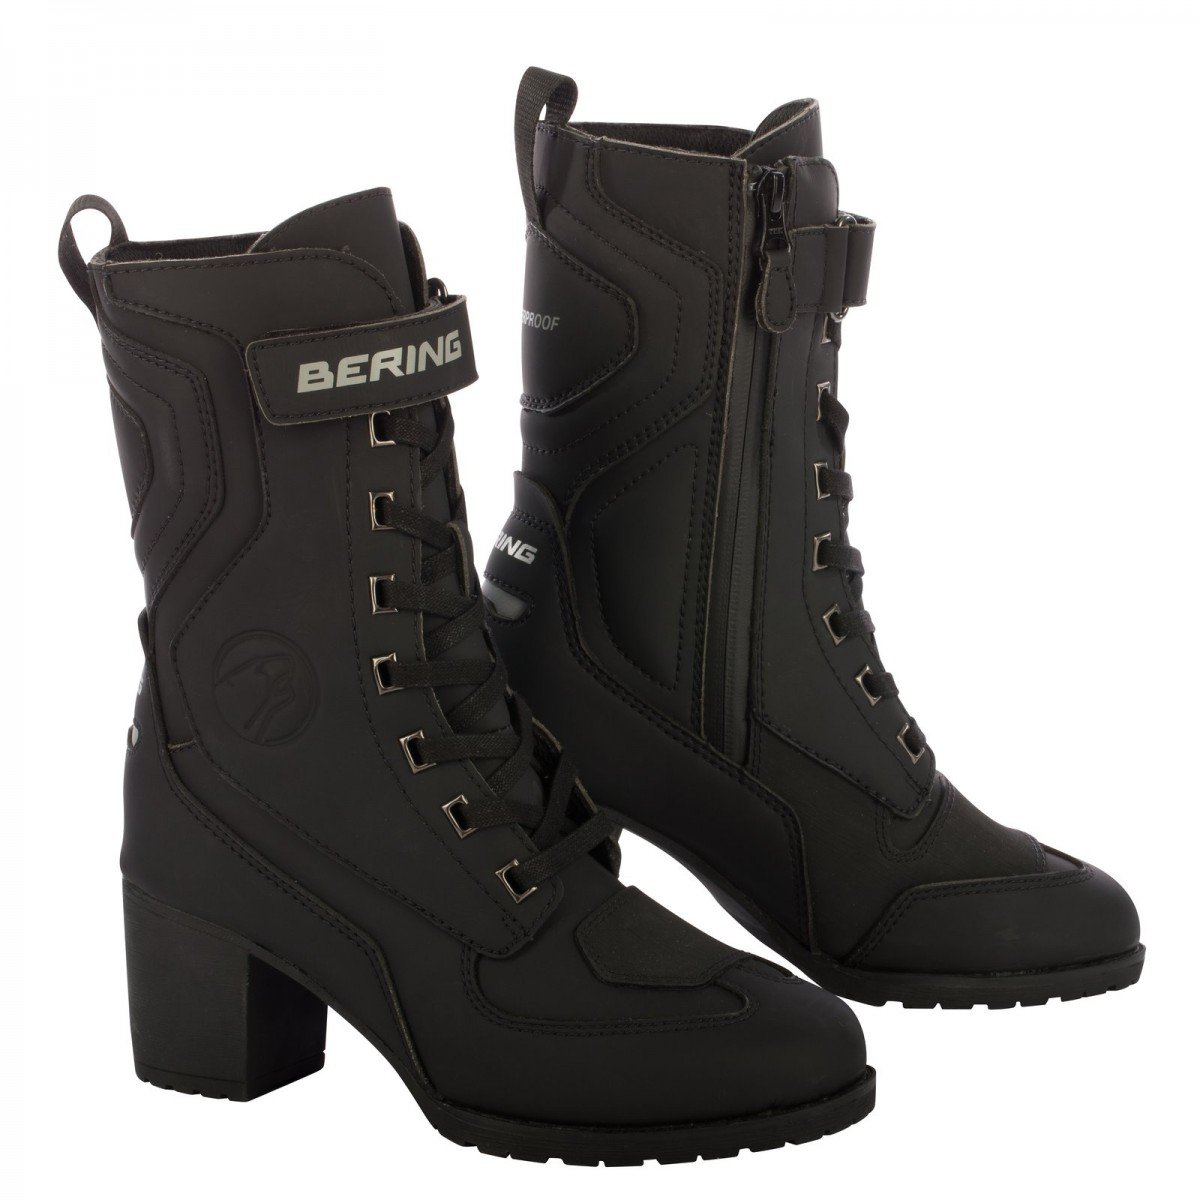 Image of Bering Lady Leonarda 2 Shoes Black Size 37 ID 3660815165270